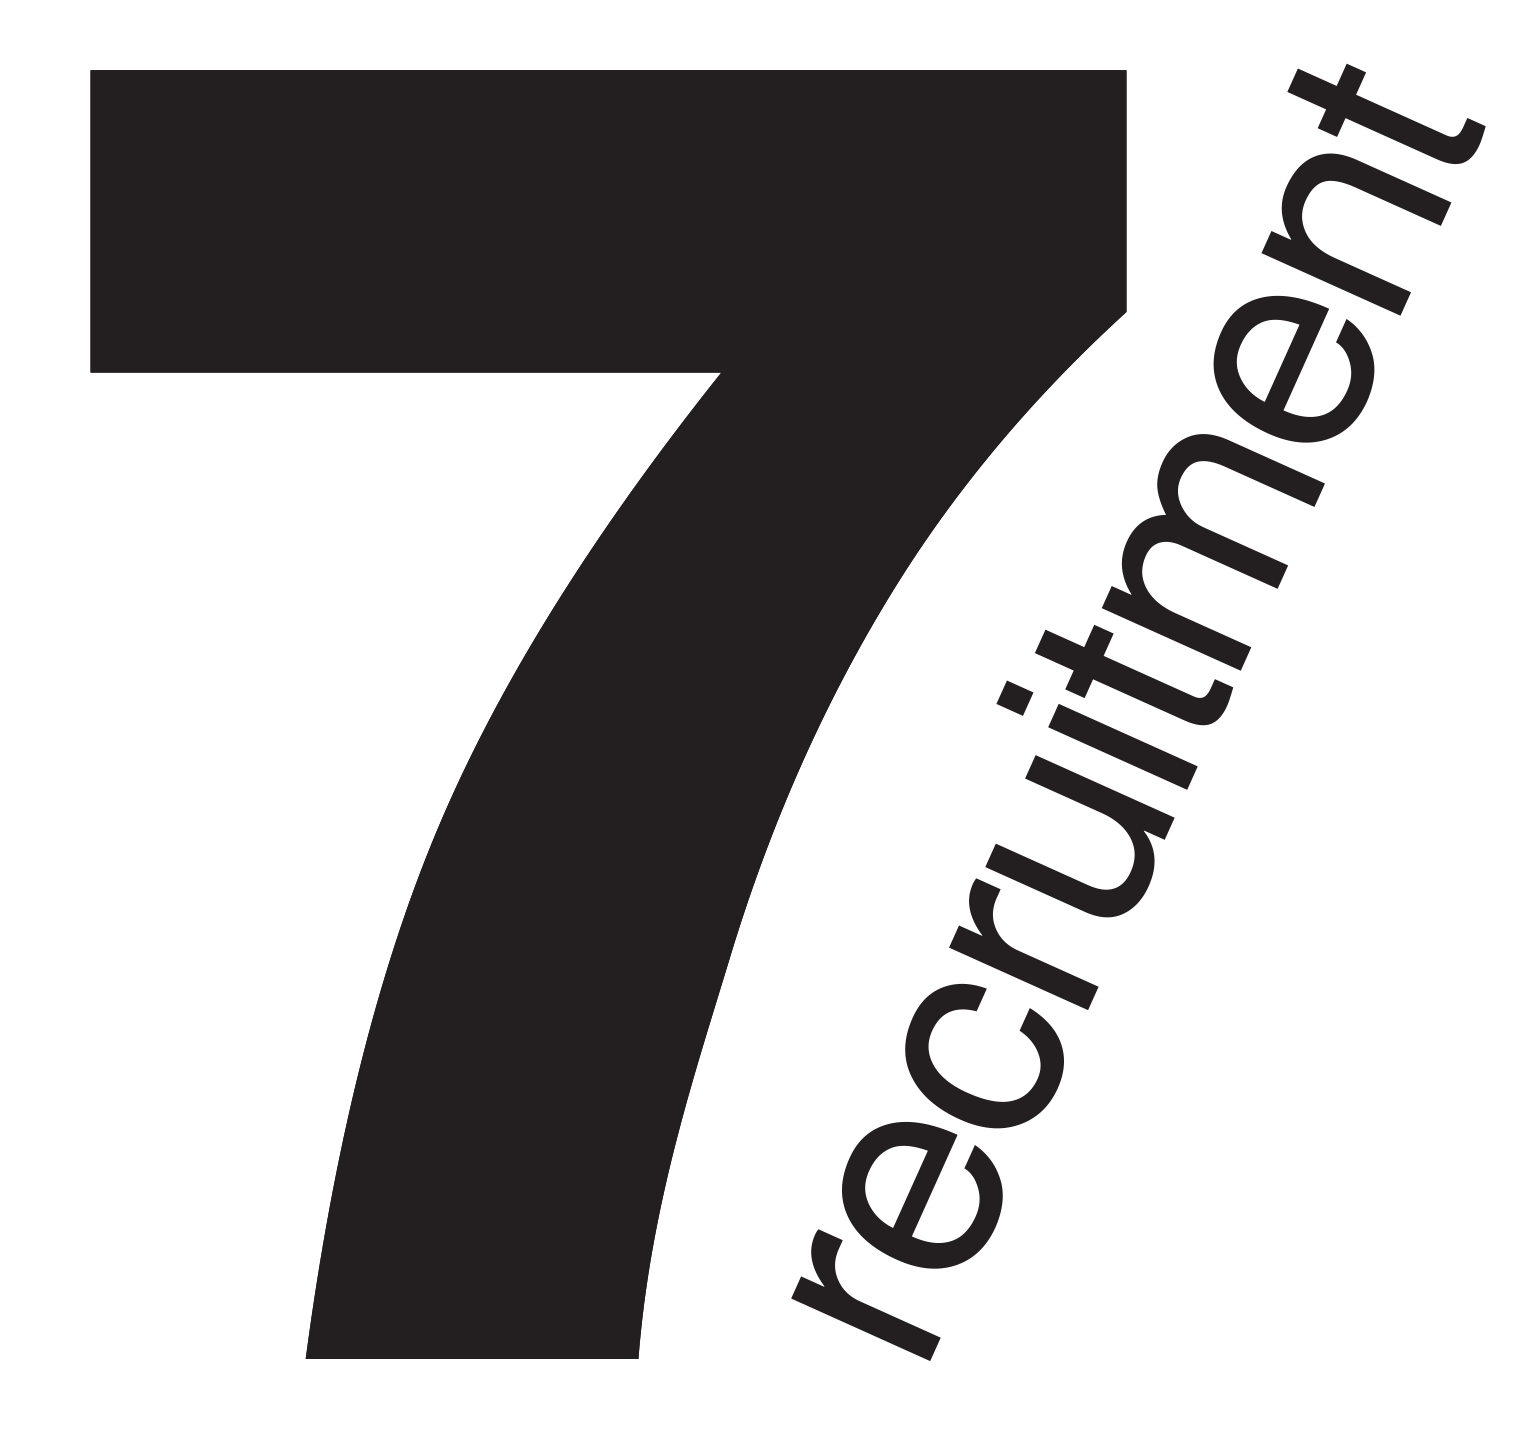 7 Recruitment